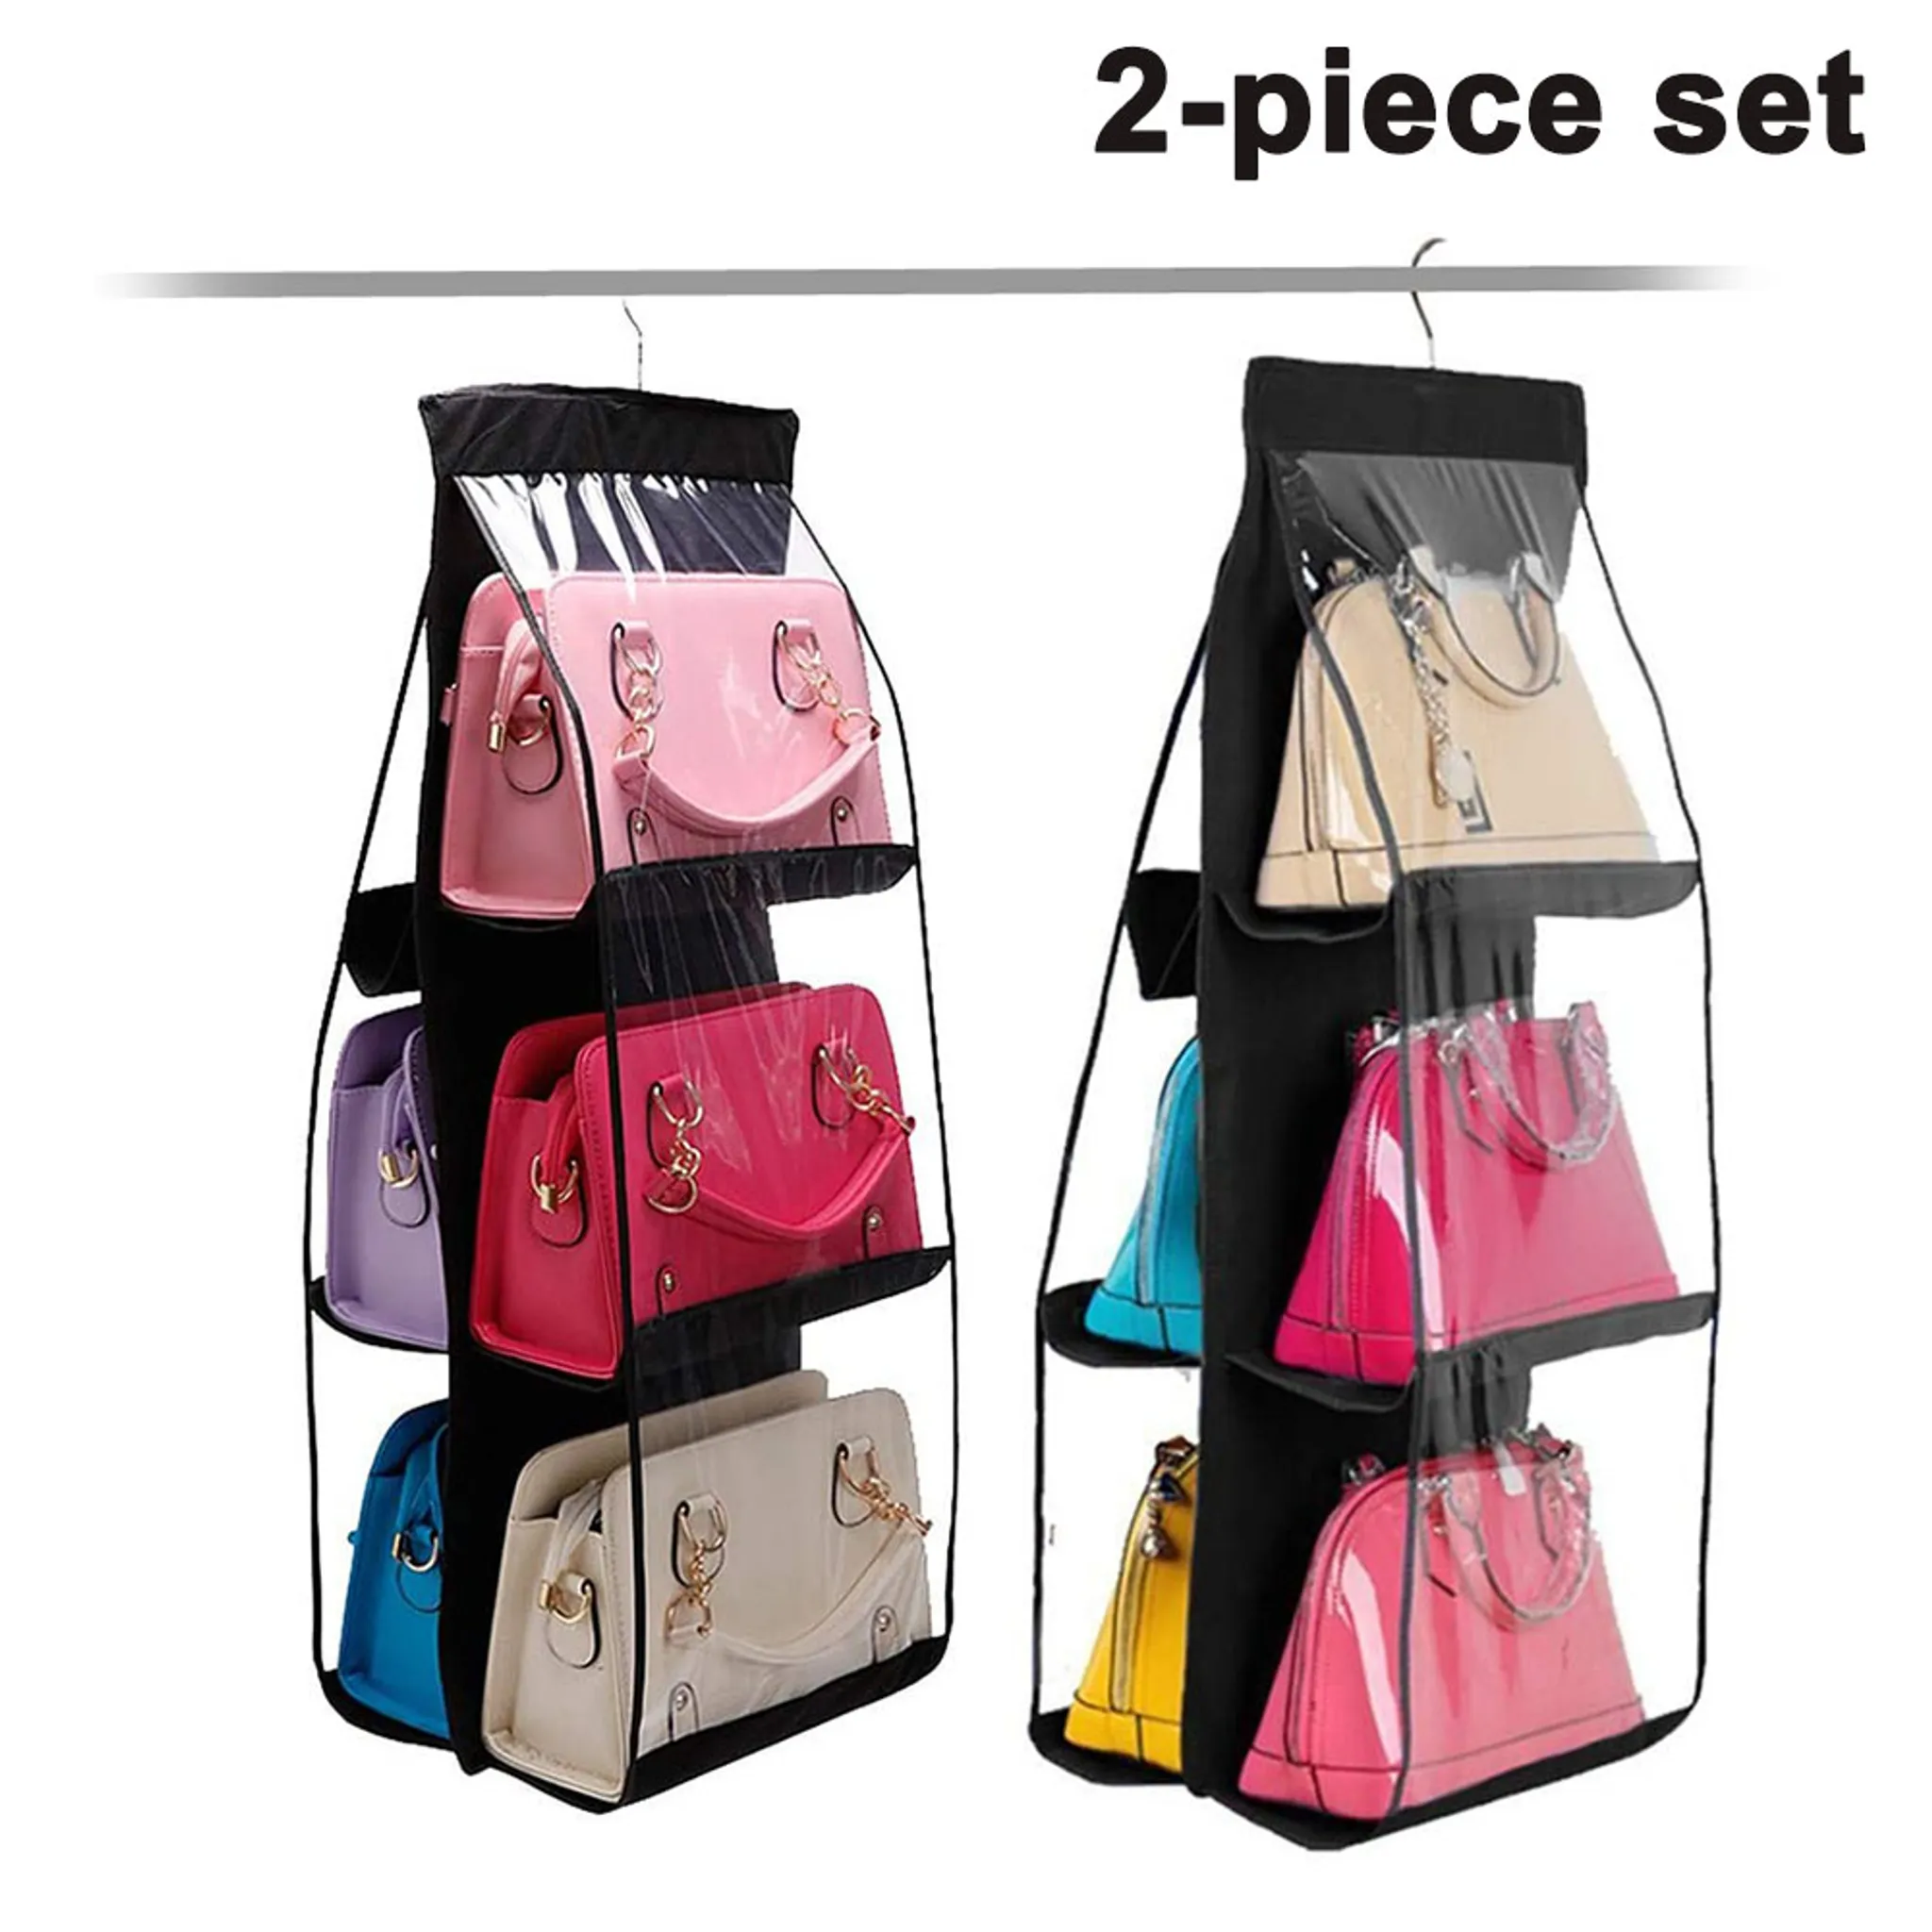 Cradonn - Handtaschen Organizer (anpassbar) klein mit Reißverschluss Pink -  Taschenorganizer für Handtasche & Shopper - Kosmetiktasche Organisator für